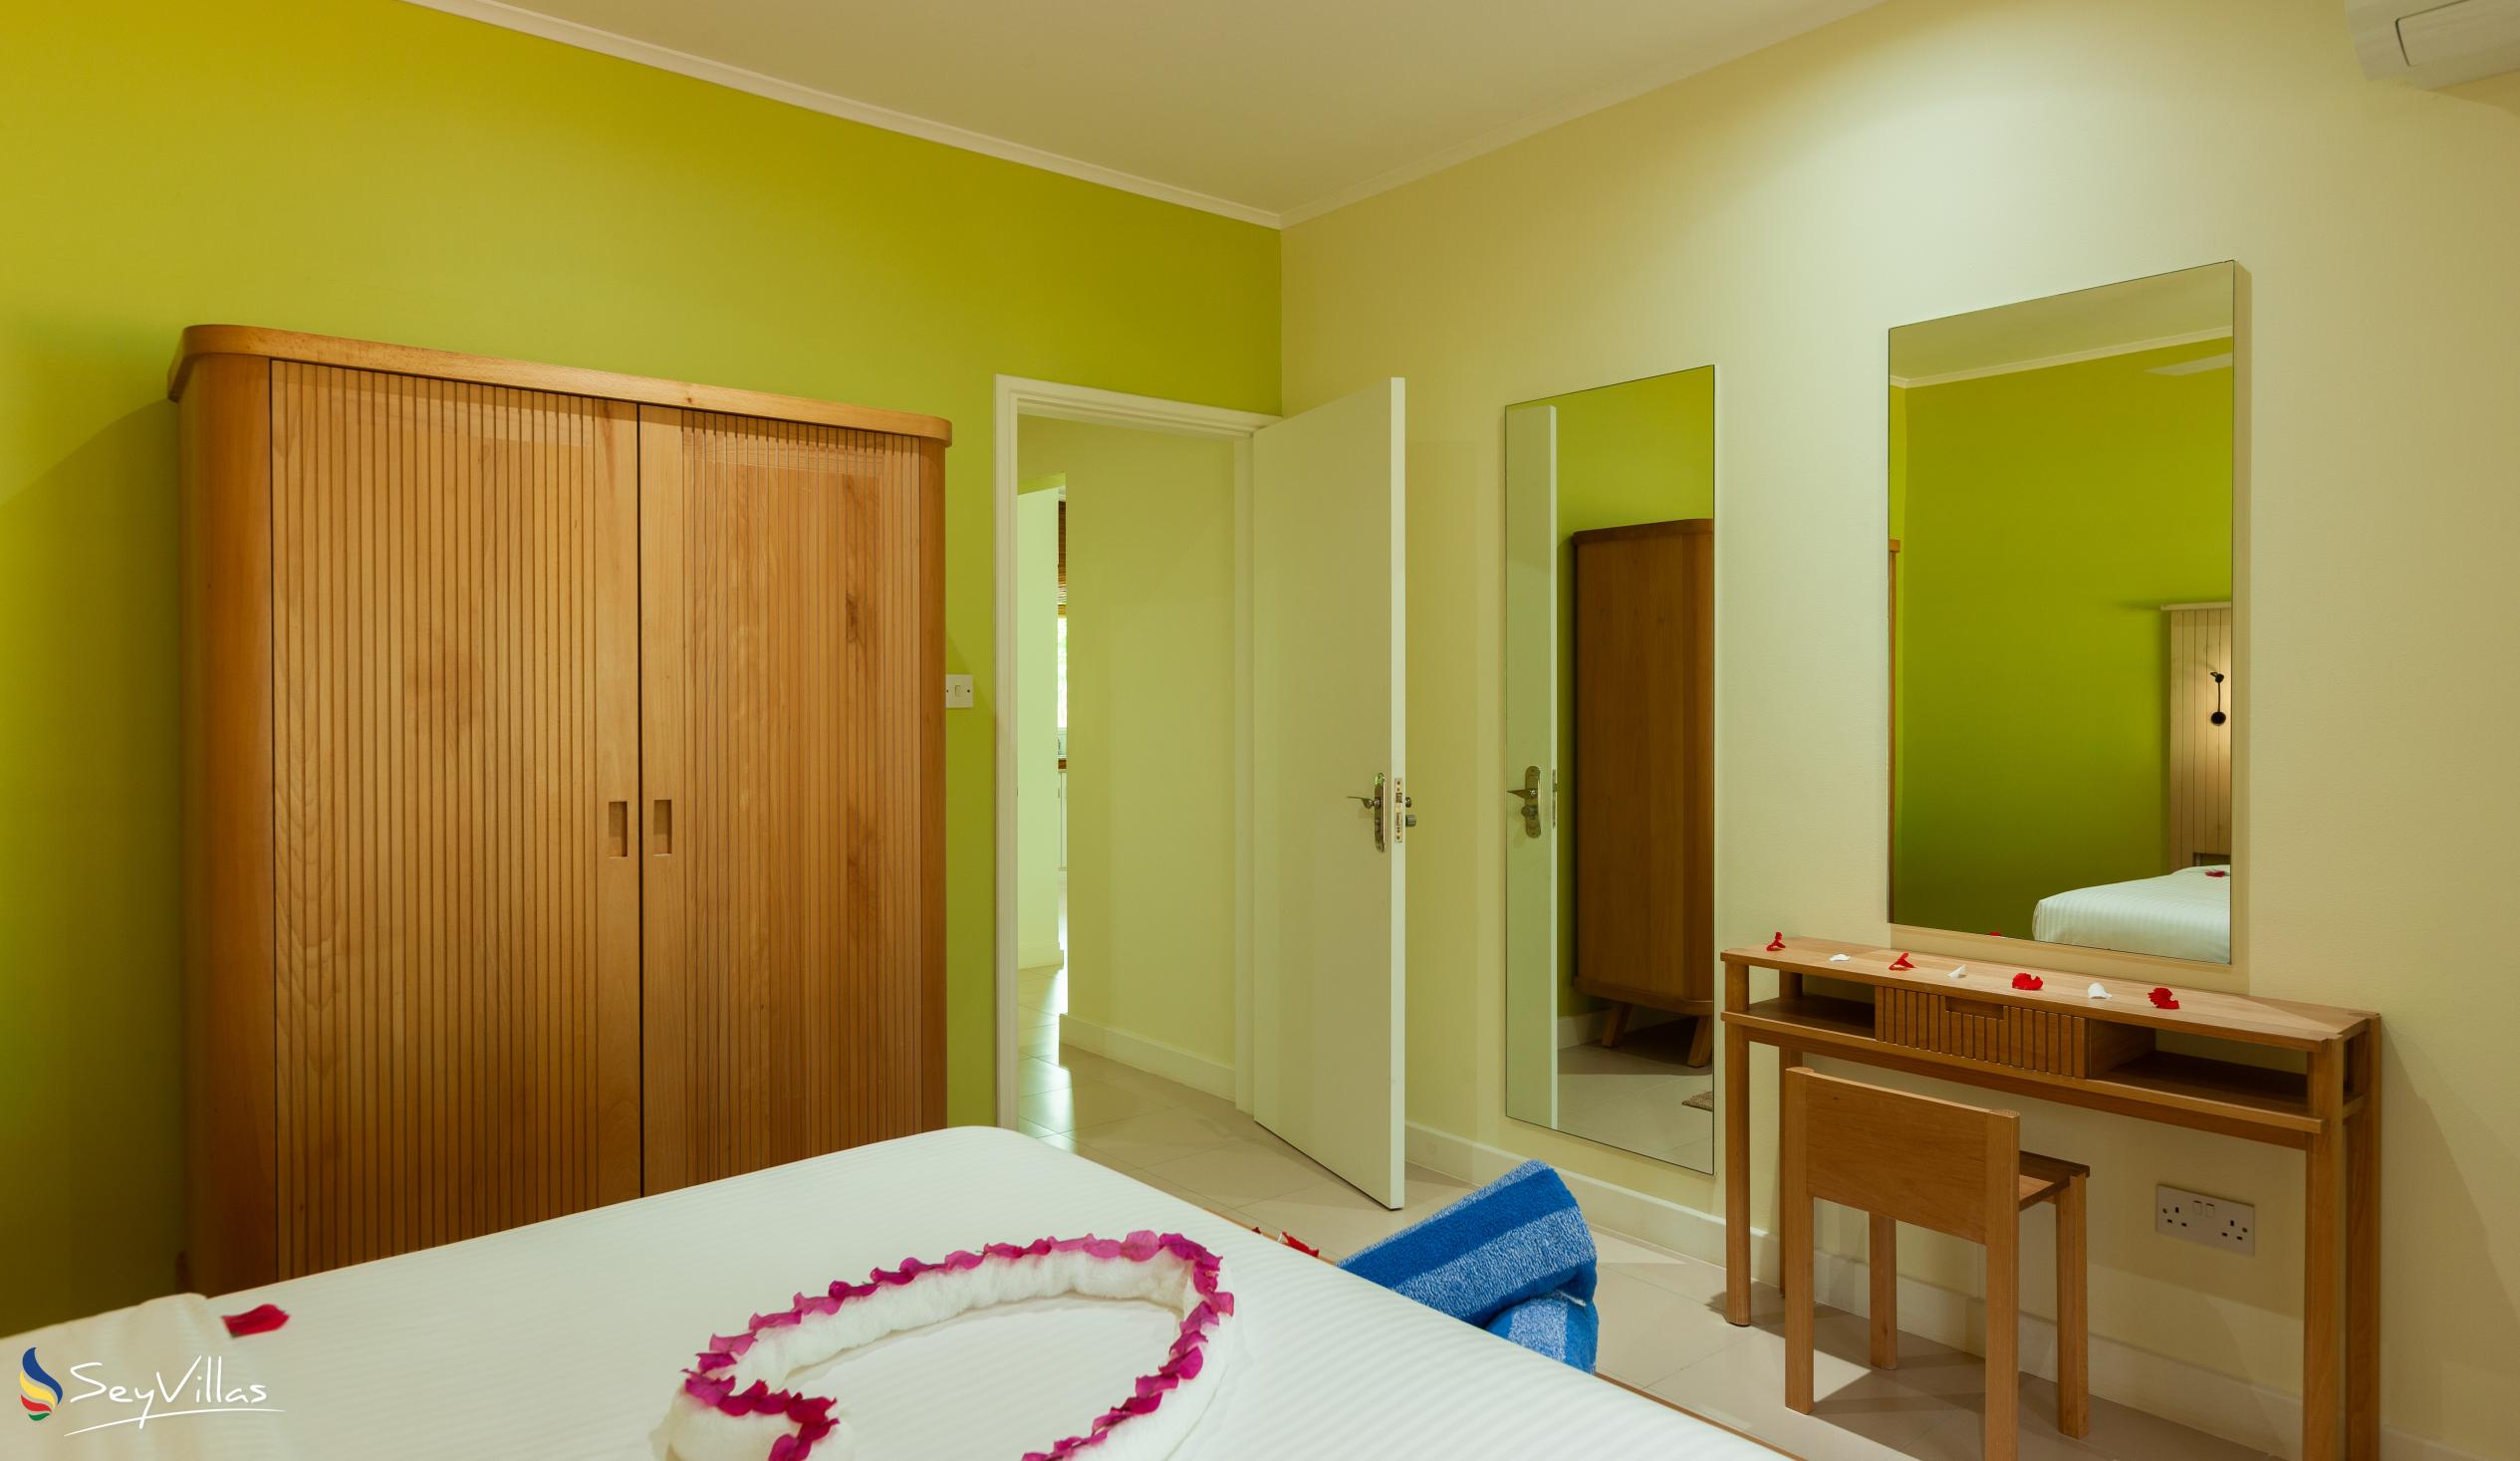 Foto 48: Residence Praslinoise - Familienappartement mit 2 Schlafzimmern (EG) - Praslin (Seychellen)